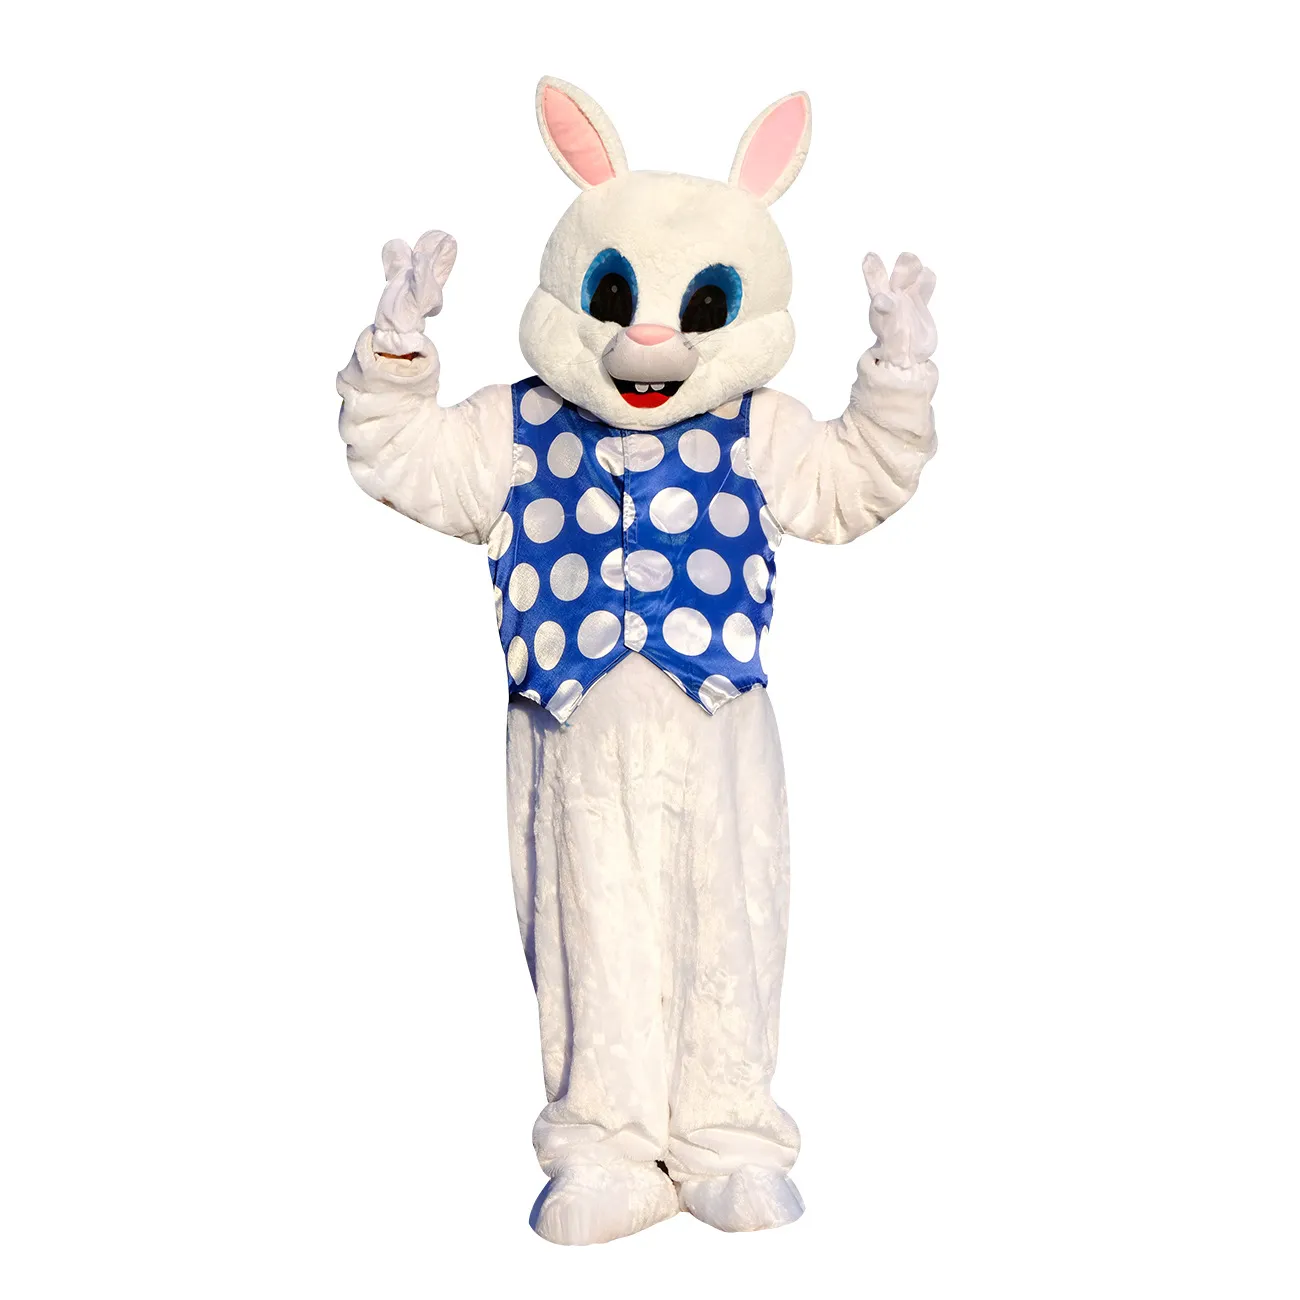 Costumi mascotteGilet pasquale comprimibile Coniglio Orecchie corte Animali Costume mascotte Personaggio dei cartoni animati Bambola Abbigliamento Abito Parata di Halloween